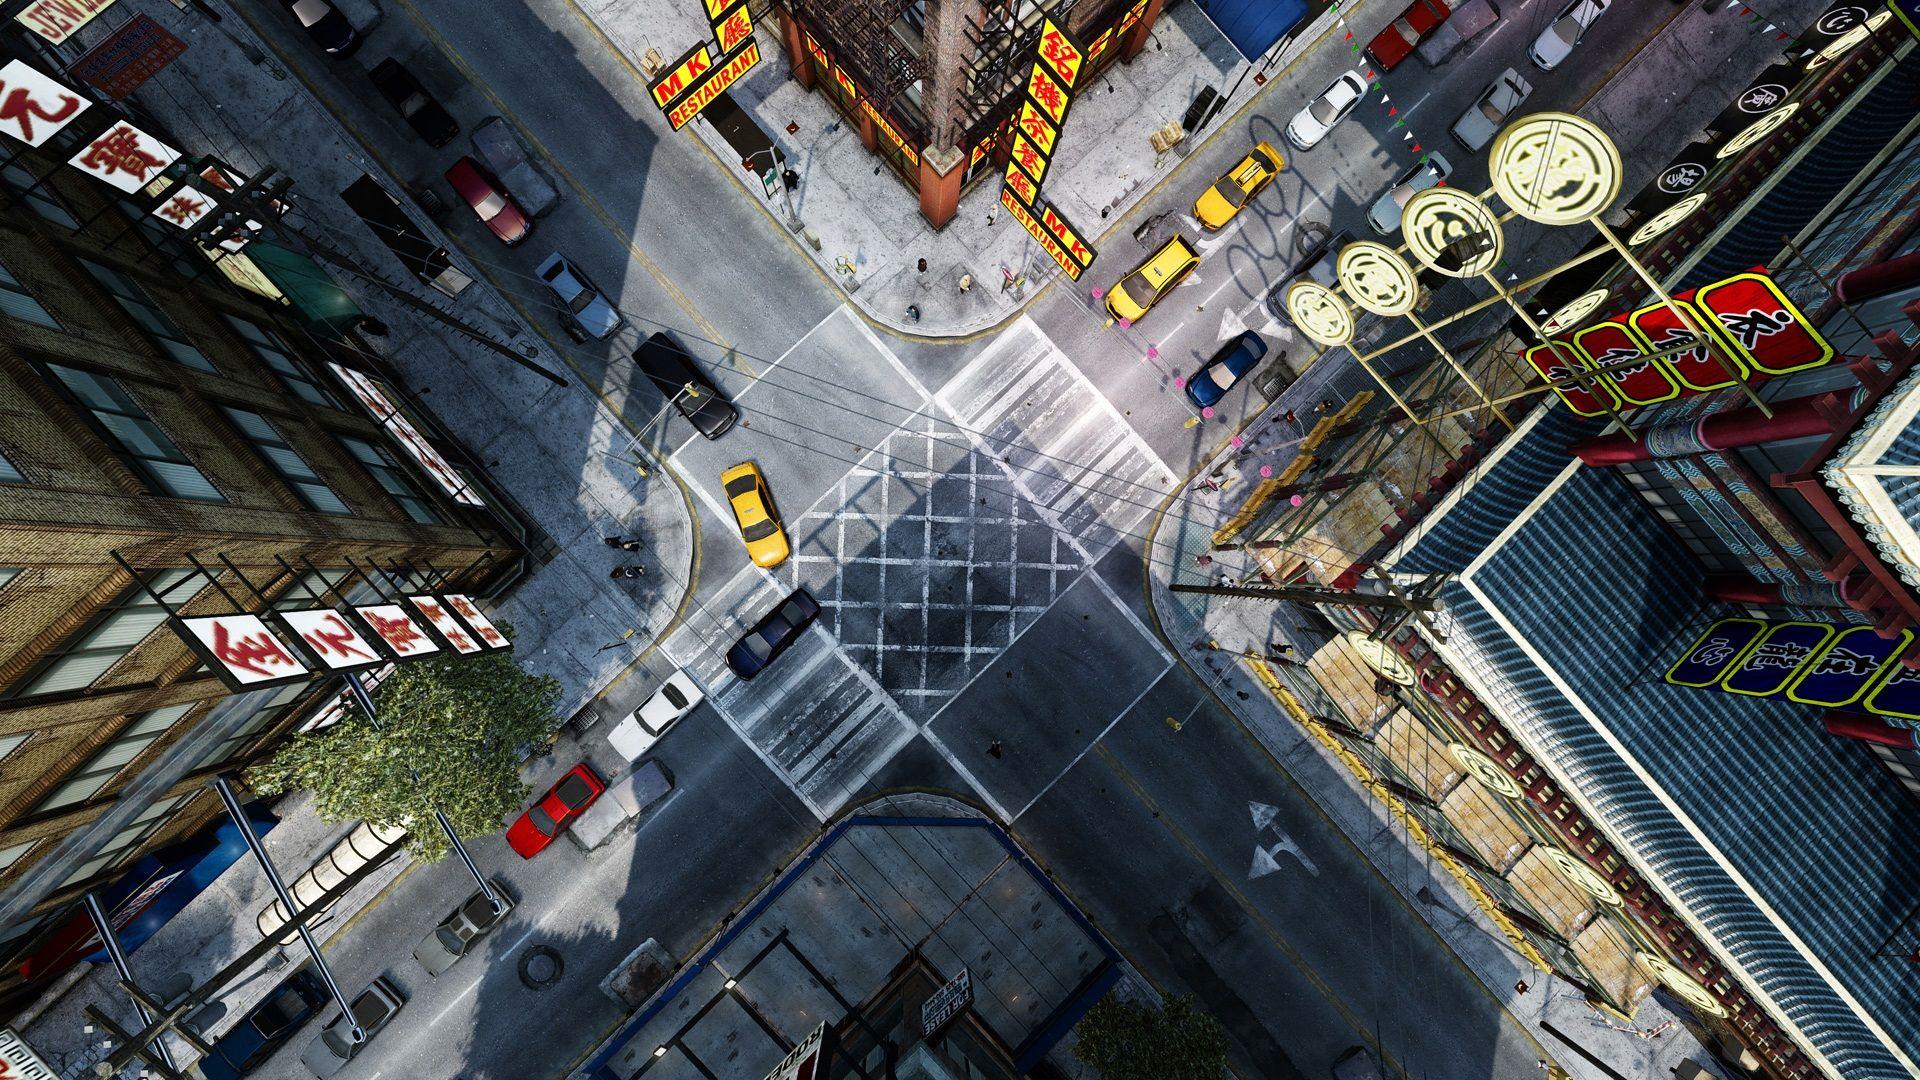 GTA IV City 1080p Wallpaper HD Rancing Games Wallpaper Res